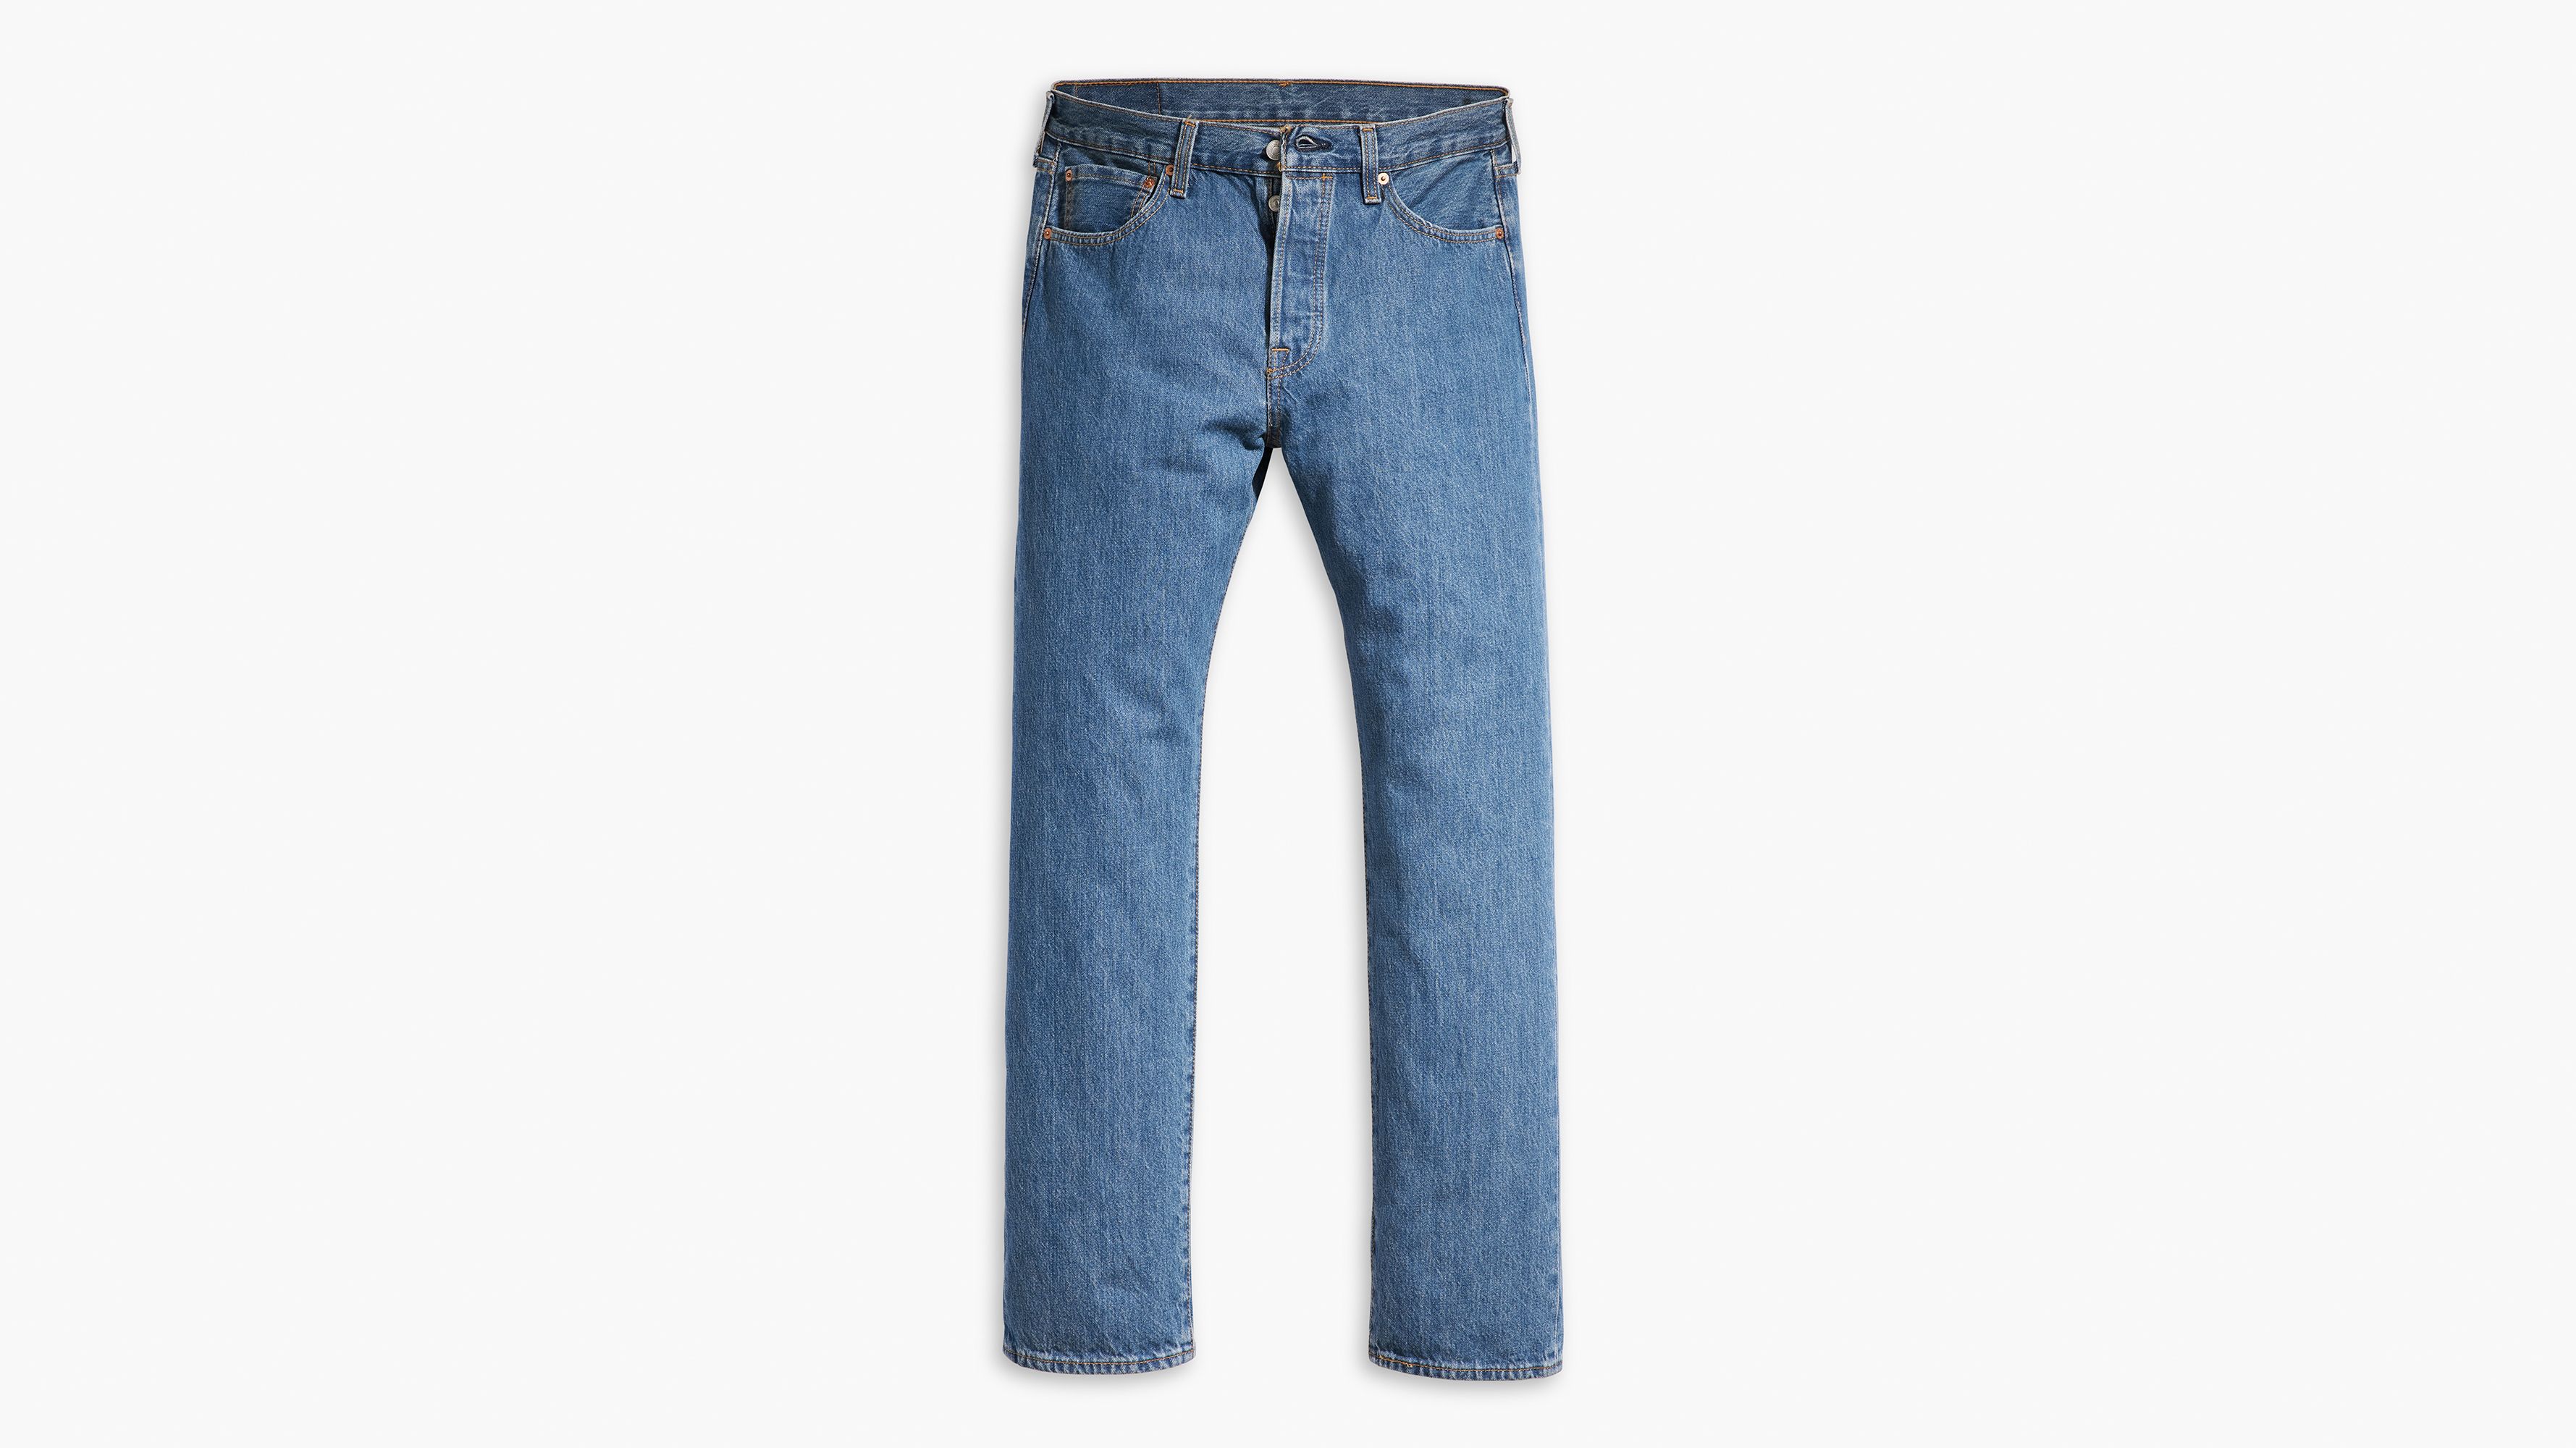 Levi's Levis Men's 501 Original Fit Jeans  Ripped jeans men, Mens jeans  levis, Mens jeans